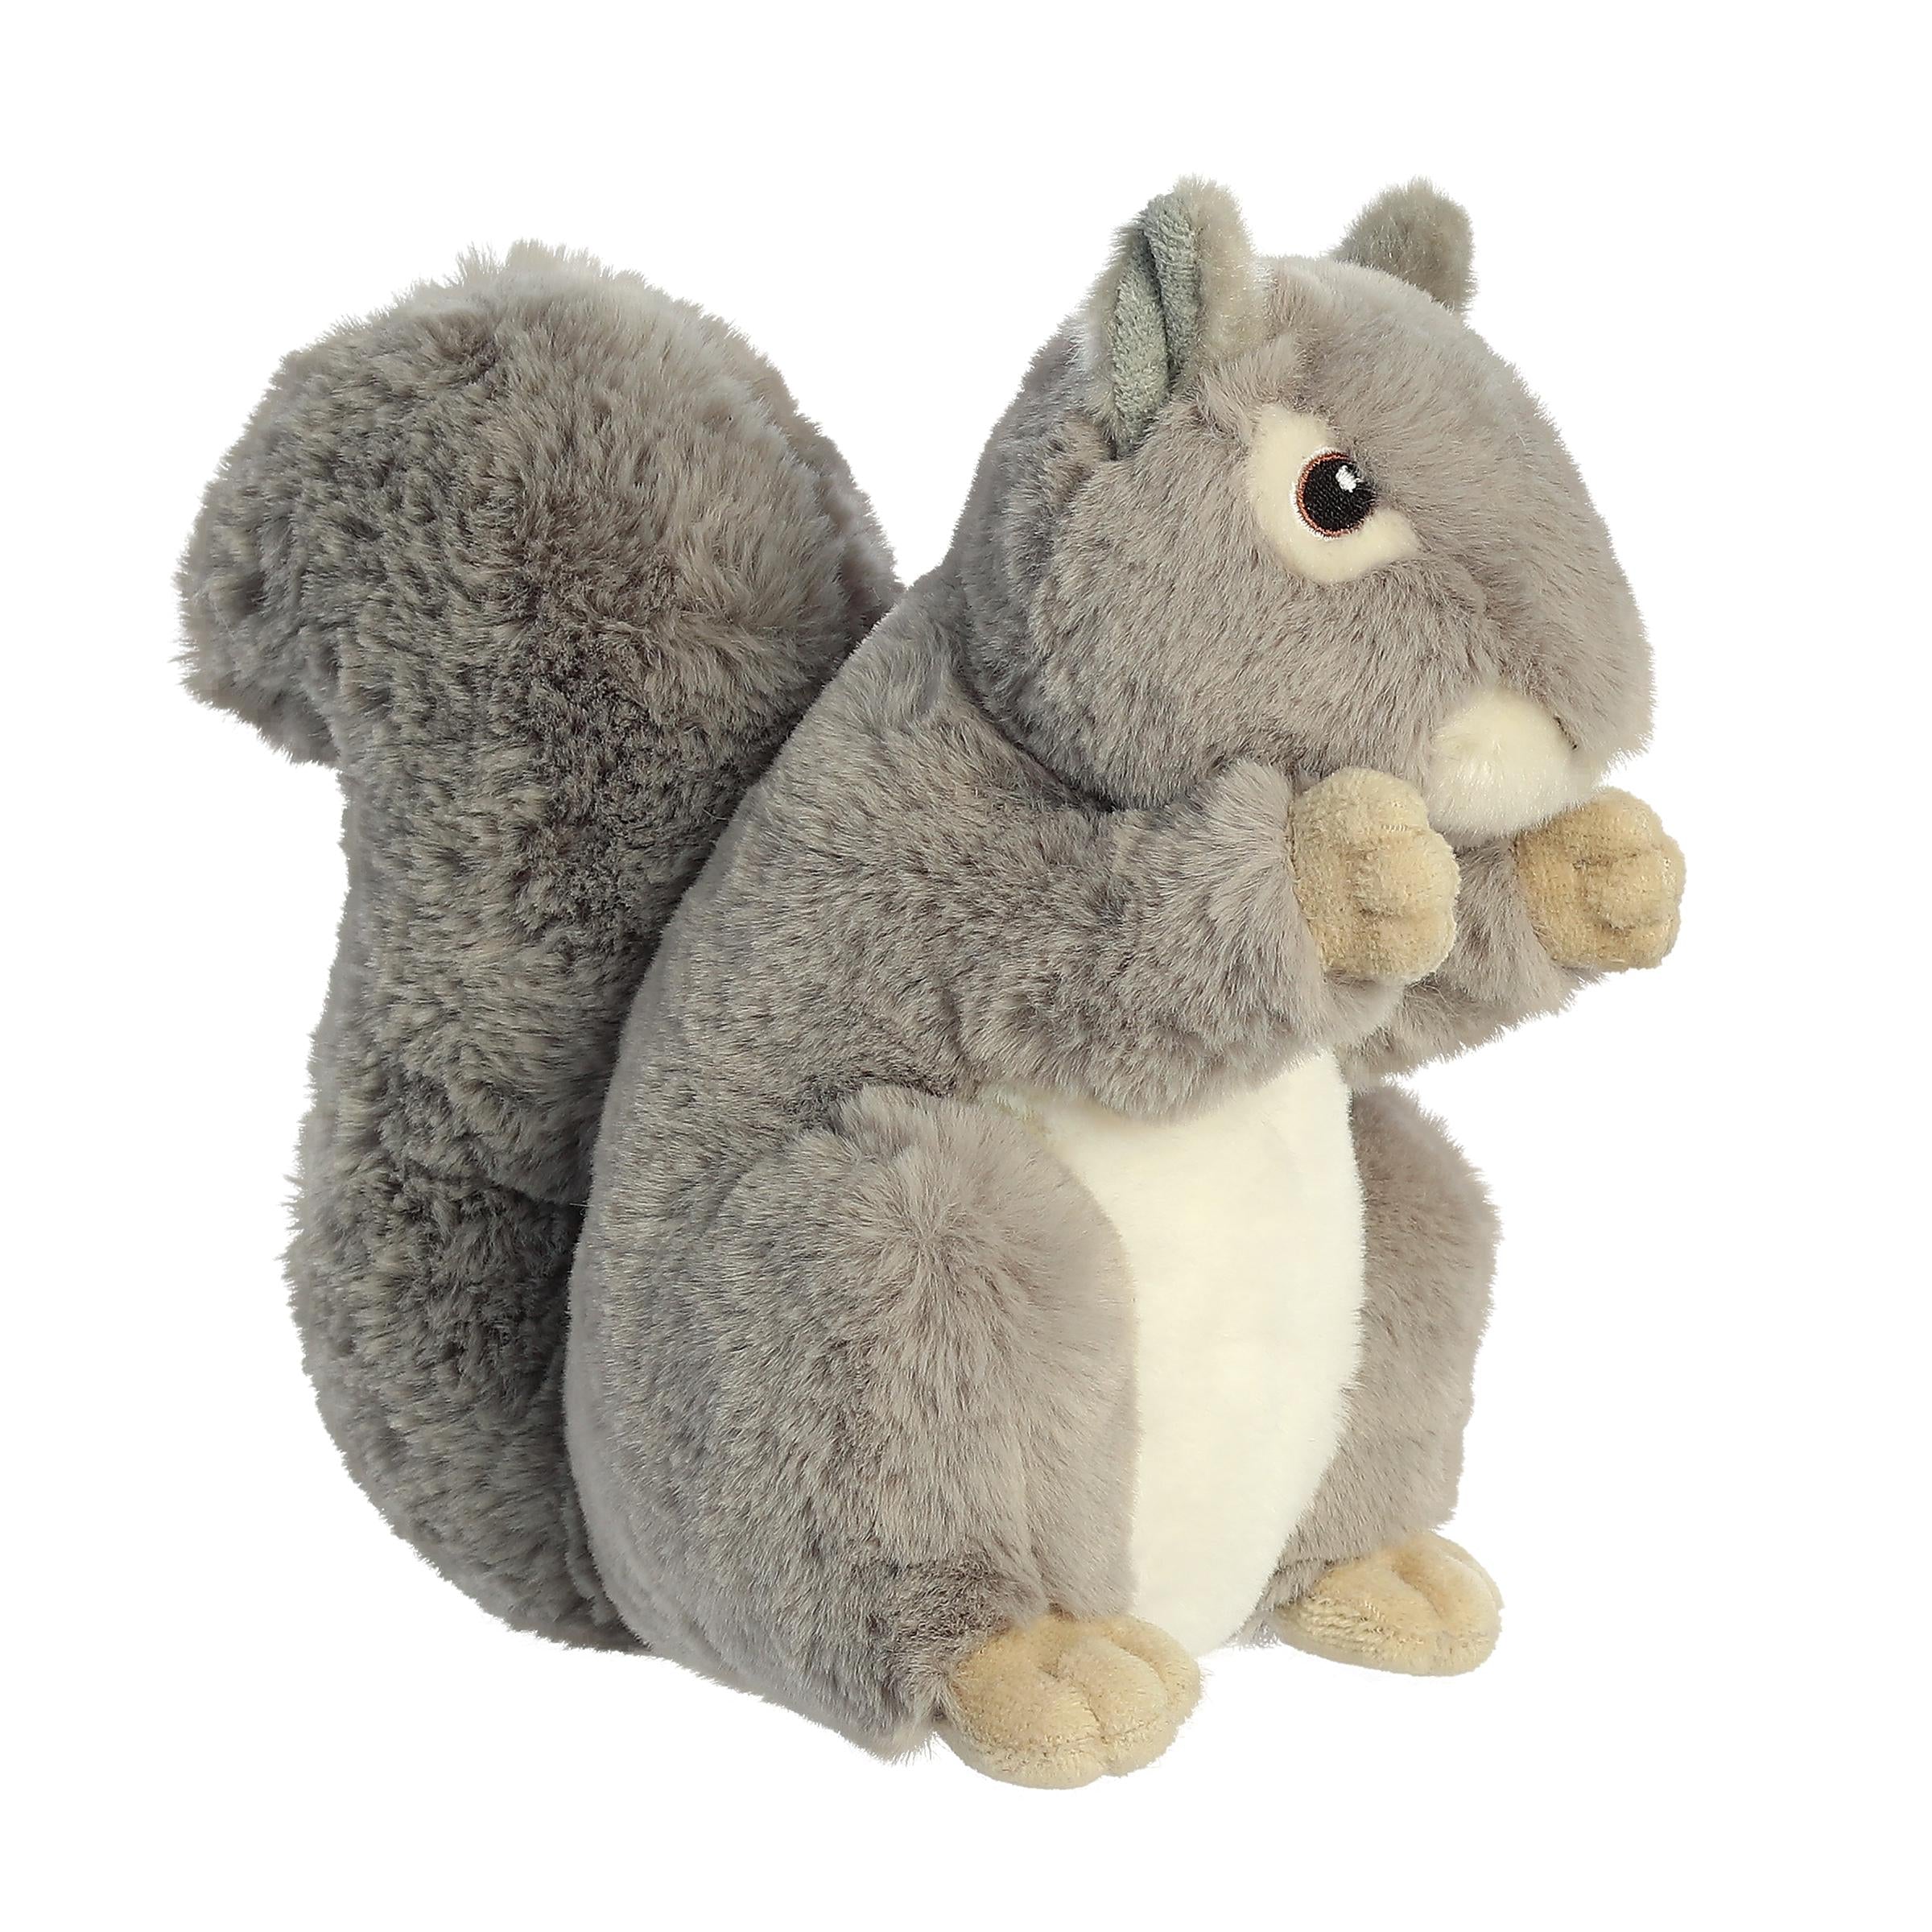  Aurora Chip The Chipmunk & Nutty The Gray Squirrel